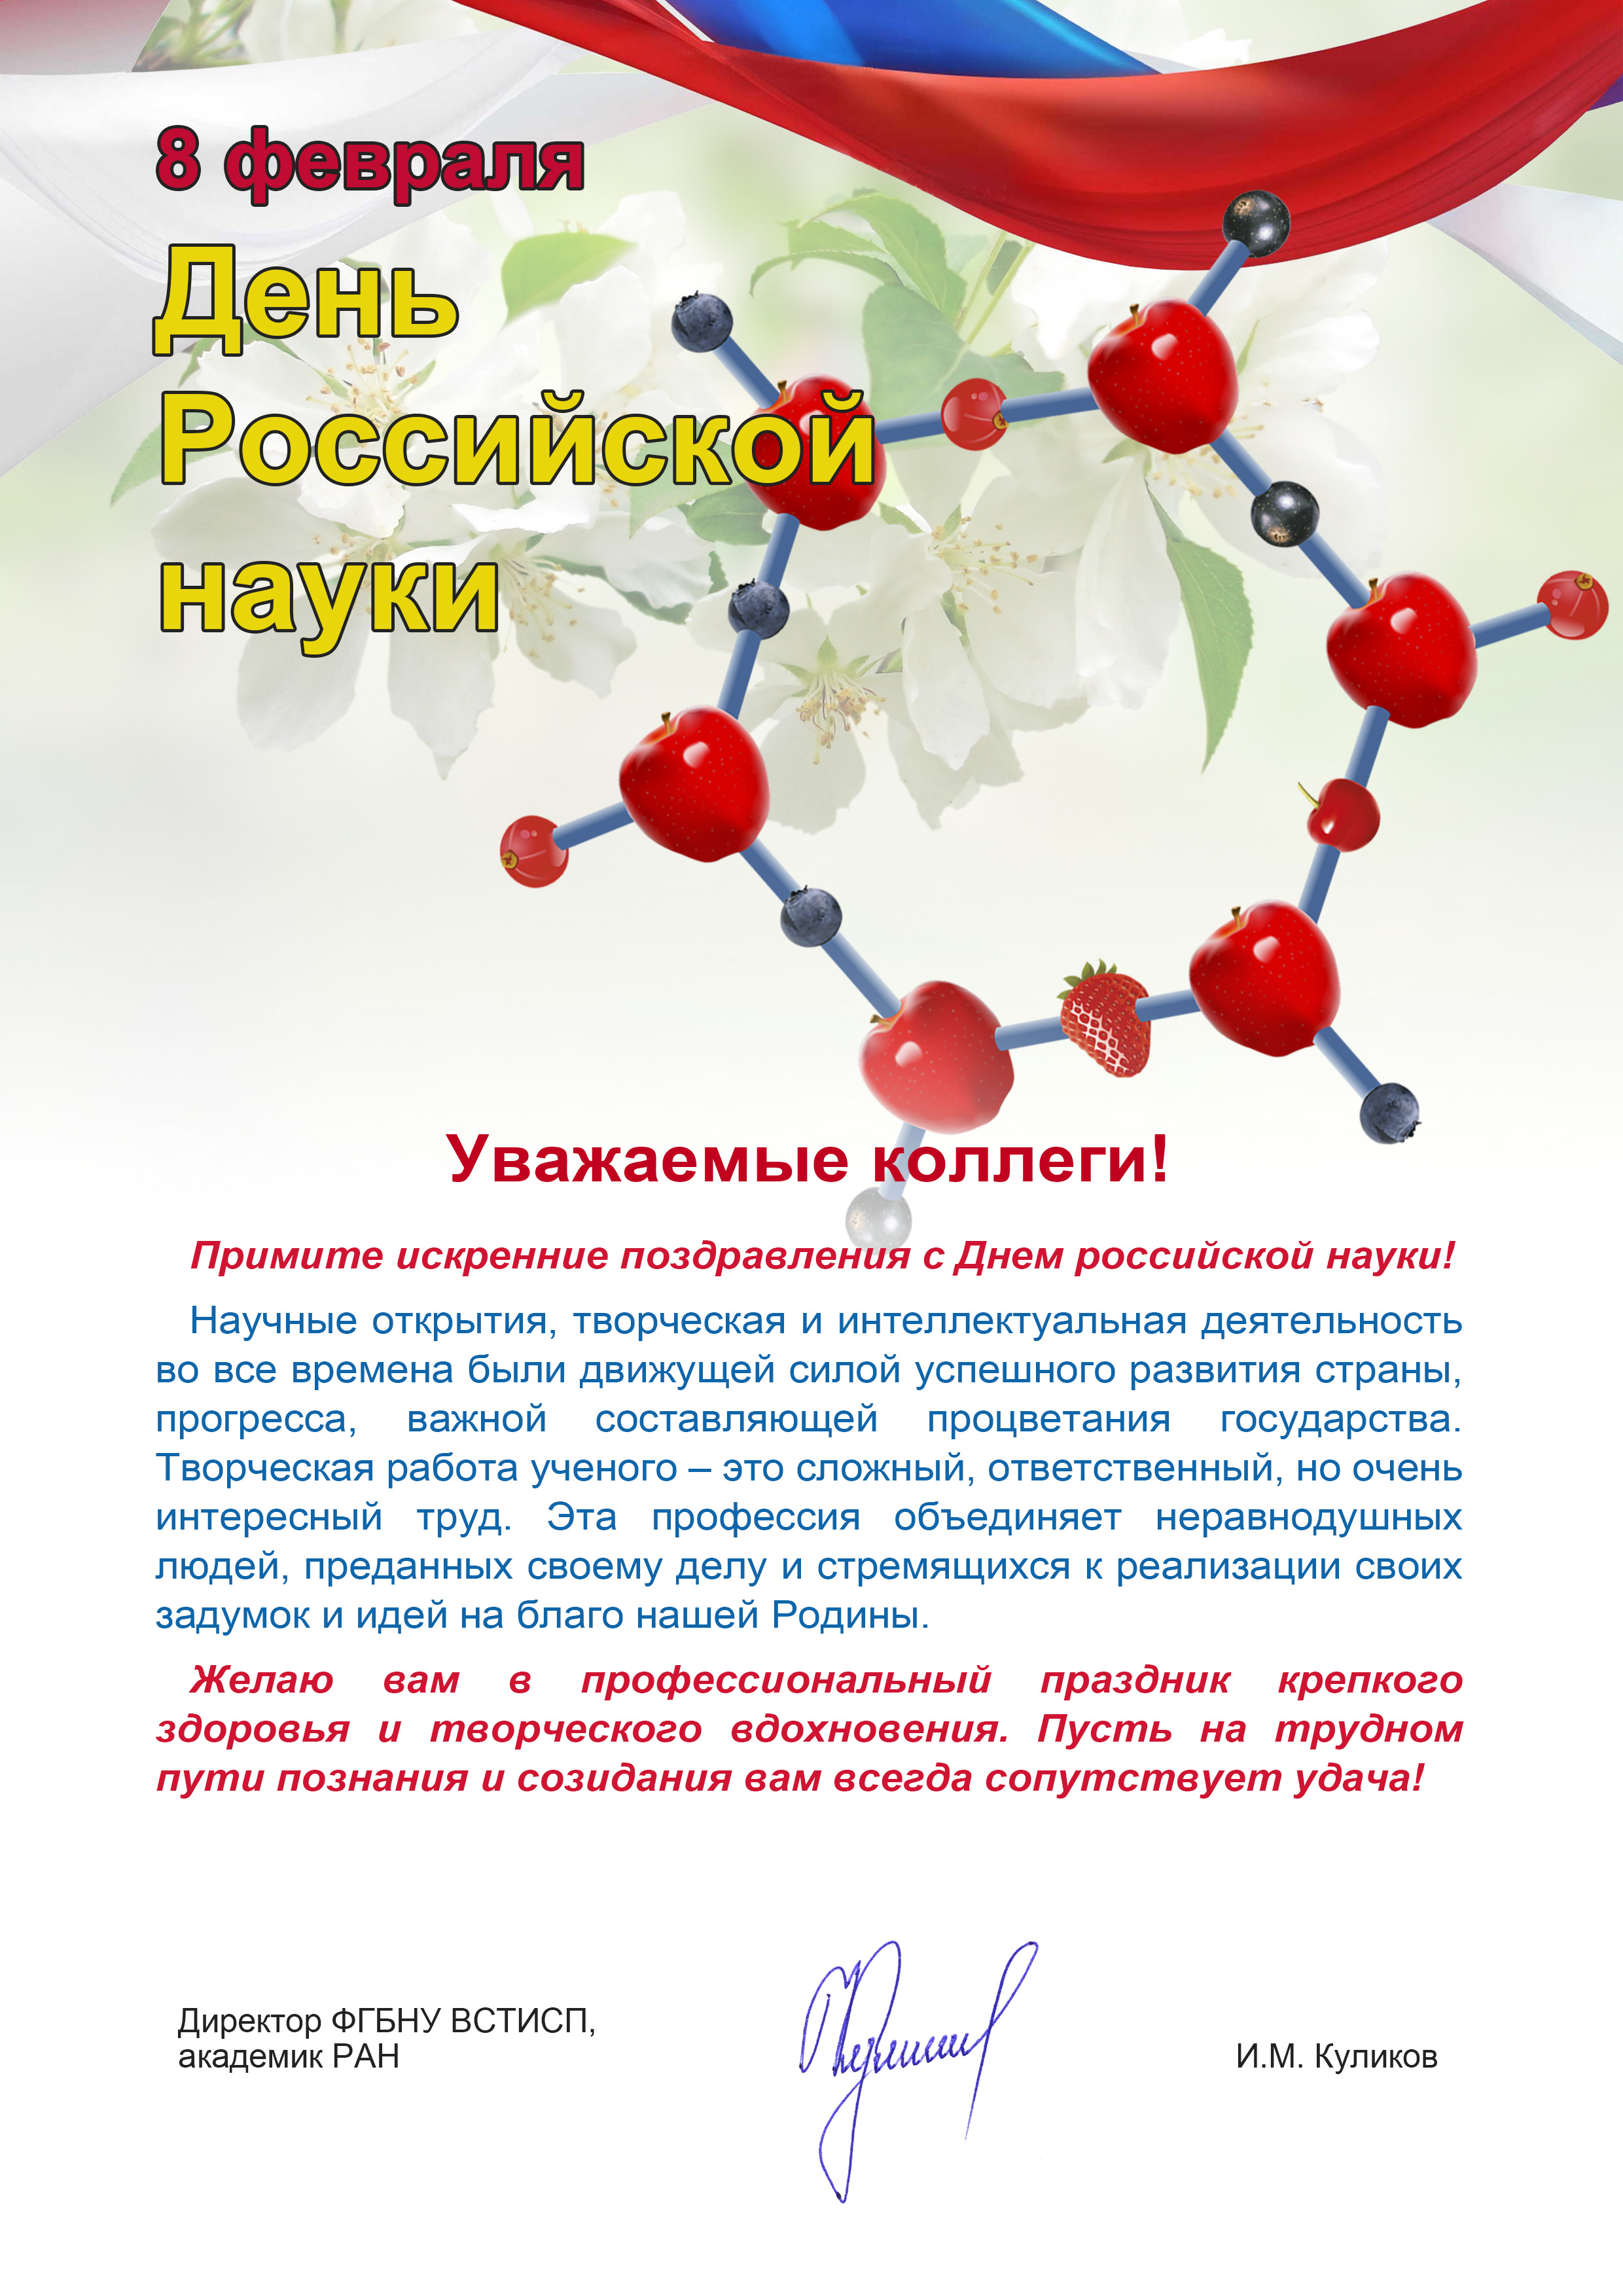 Поздравление с днем Российской науки официально